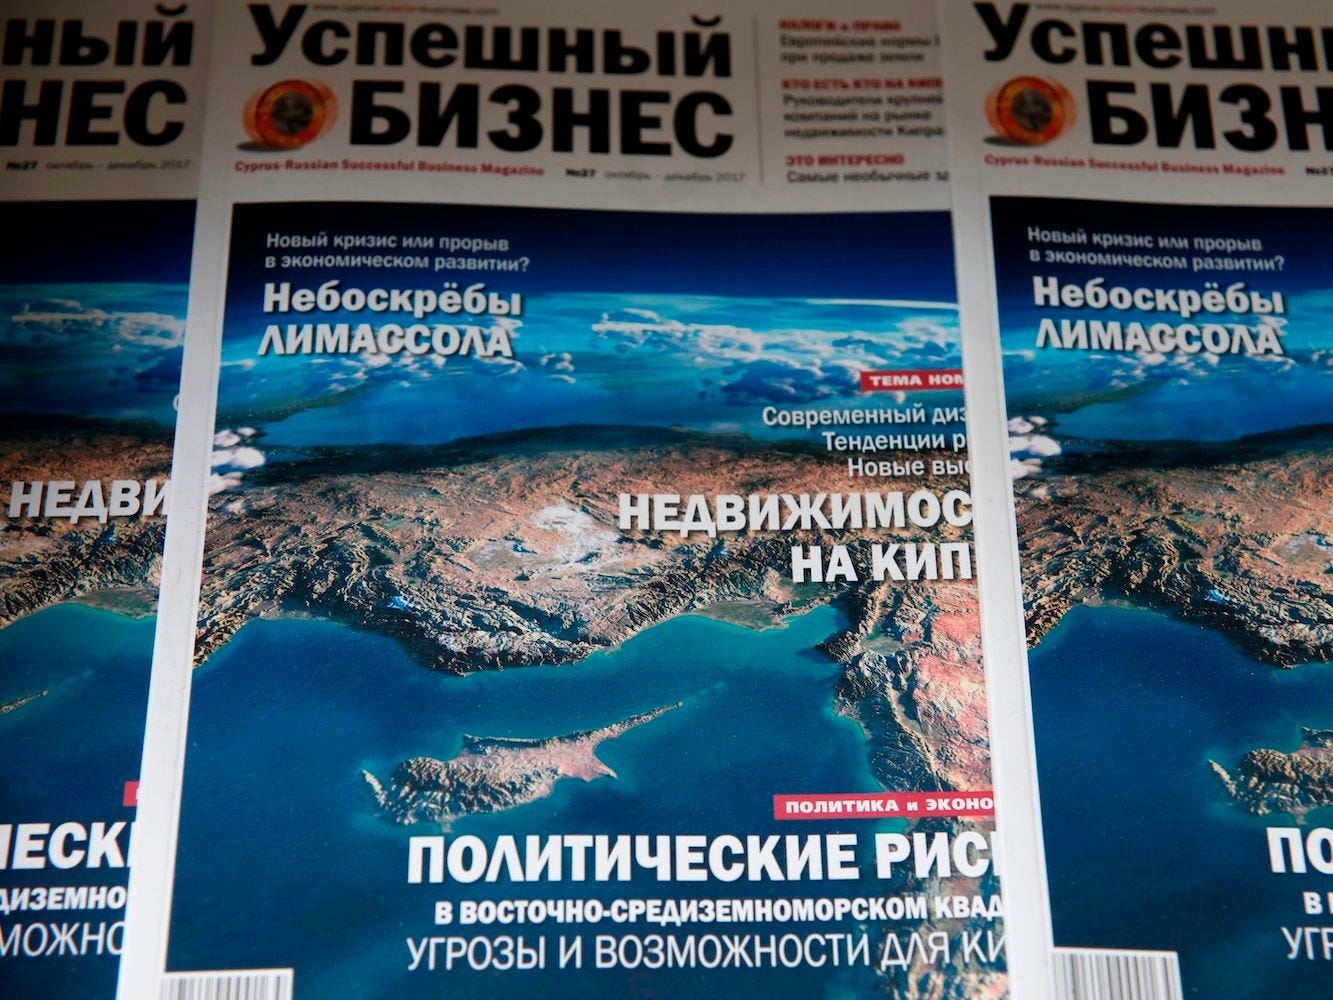 De voorpagina van een Russisch zakenblad in Cyprus.